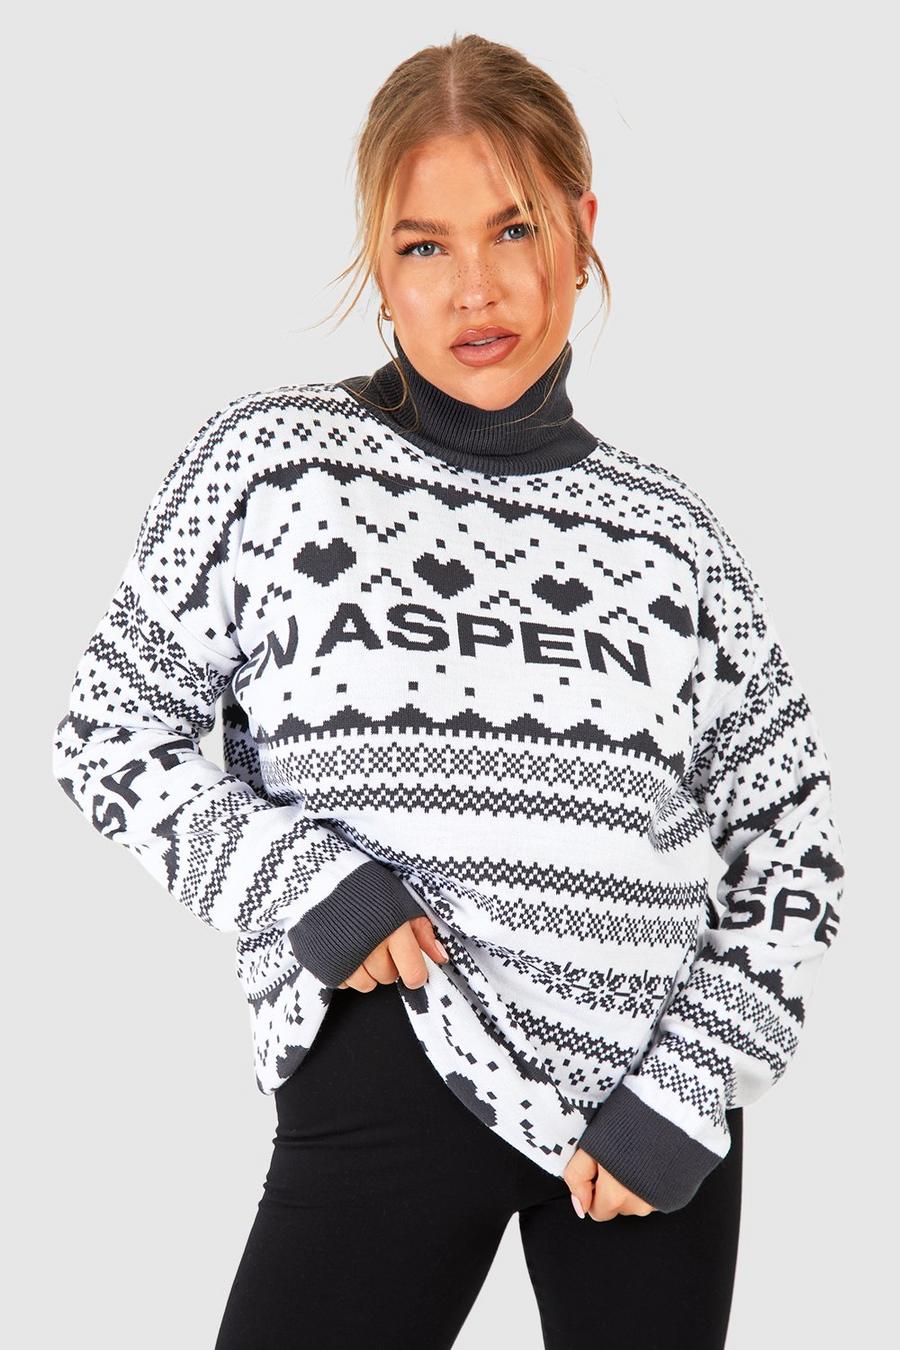 Maglione natalizio Plus Size a collo alto con slogan Aspen e motivi Fairisle, Charcoal